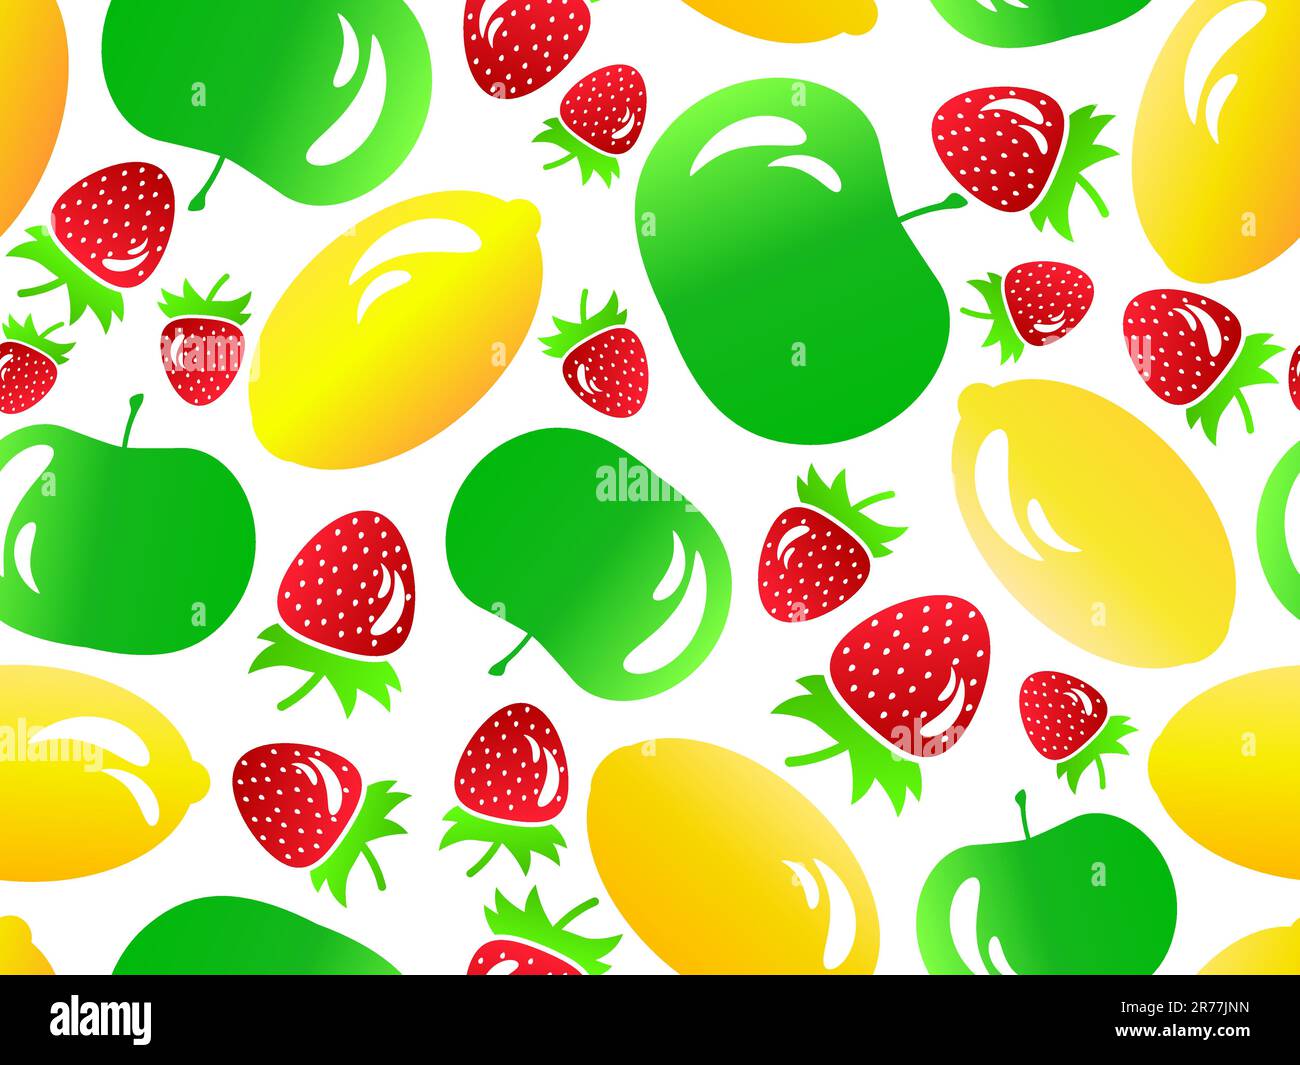 Nahtloses Muster mit Erdbeere, Zitrone und Apfel im stil der 3D jahre. Früchte mit leichter Reflexion: Zitrone, Apfel, Erdbeere. Design für den Druck auf Papier und Stock Vektor